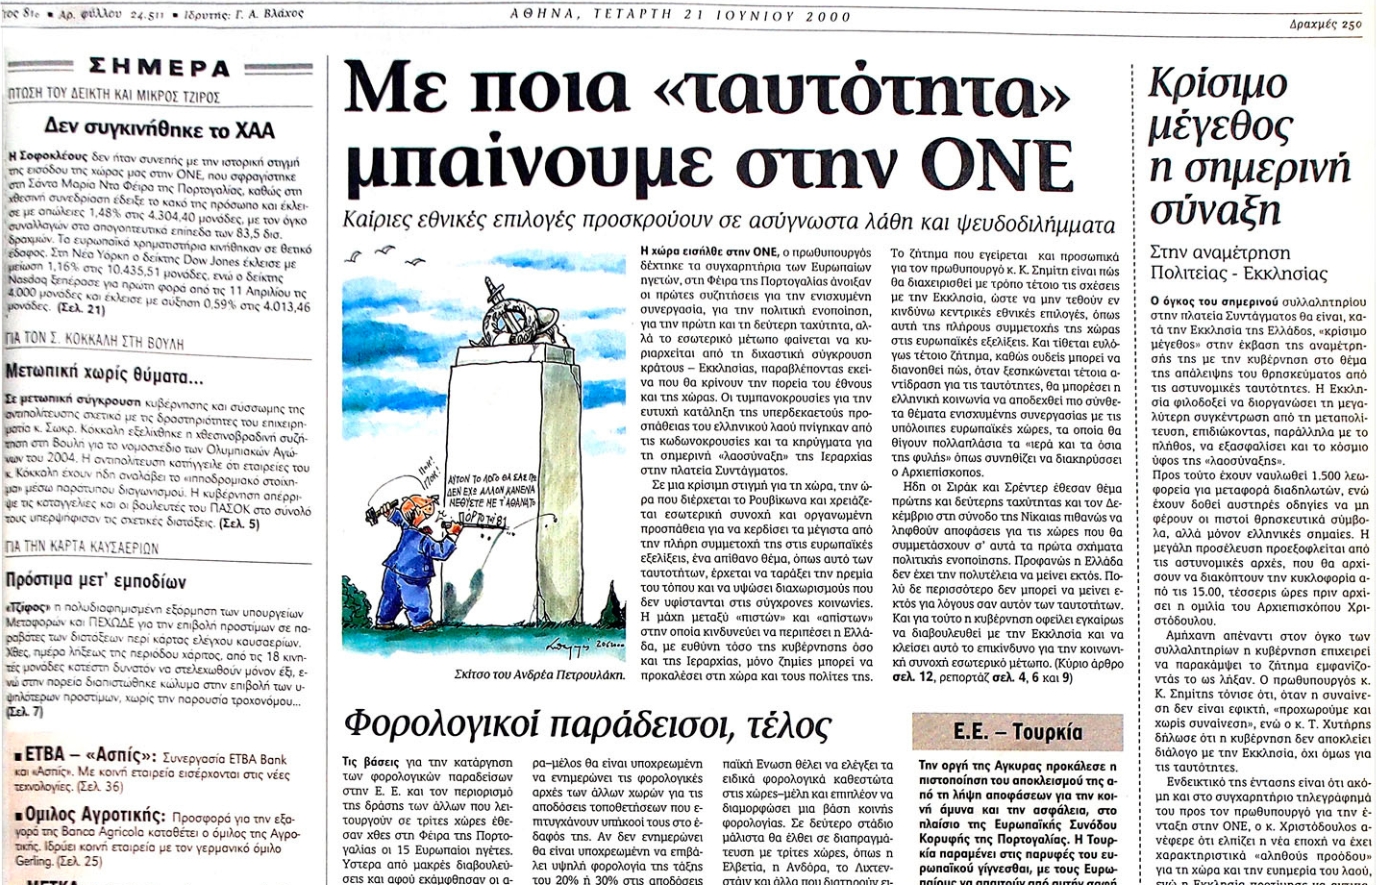 Σαν σήμερα 19 Ιουνίου: Η Ελλάδα γίνεται μέλος της ΟΝΕ και υιοθετεί το ευρώ